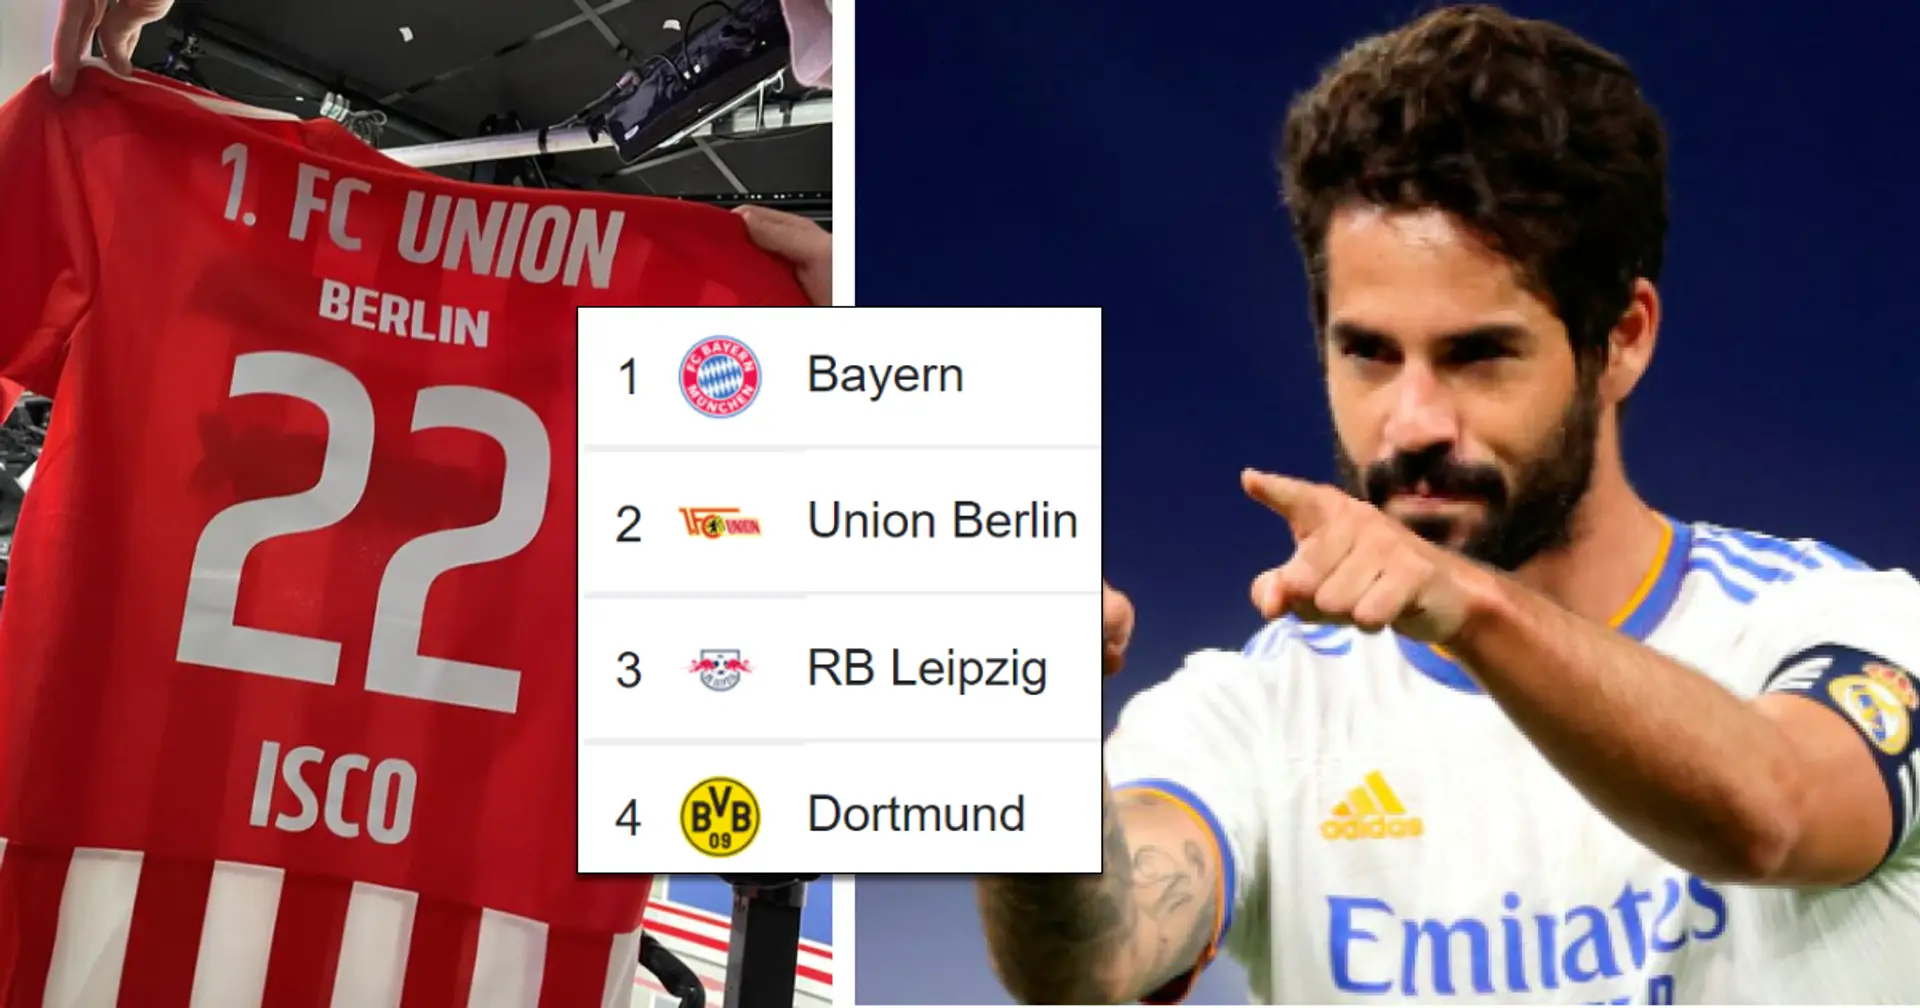 Isco rejoint le club le moins fantaisiste mais sans doute le plus passionné du top 4 de la Bundesliga